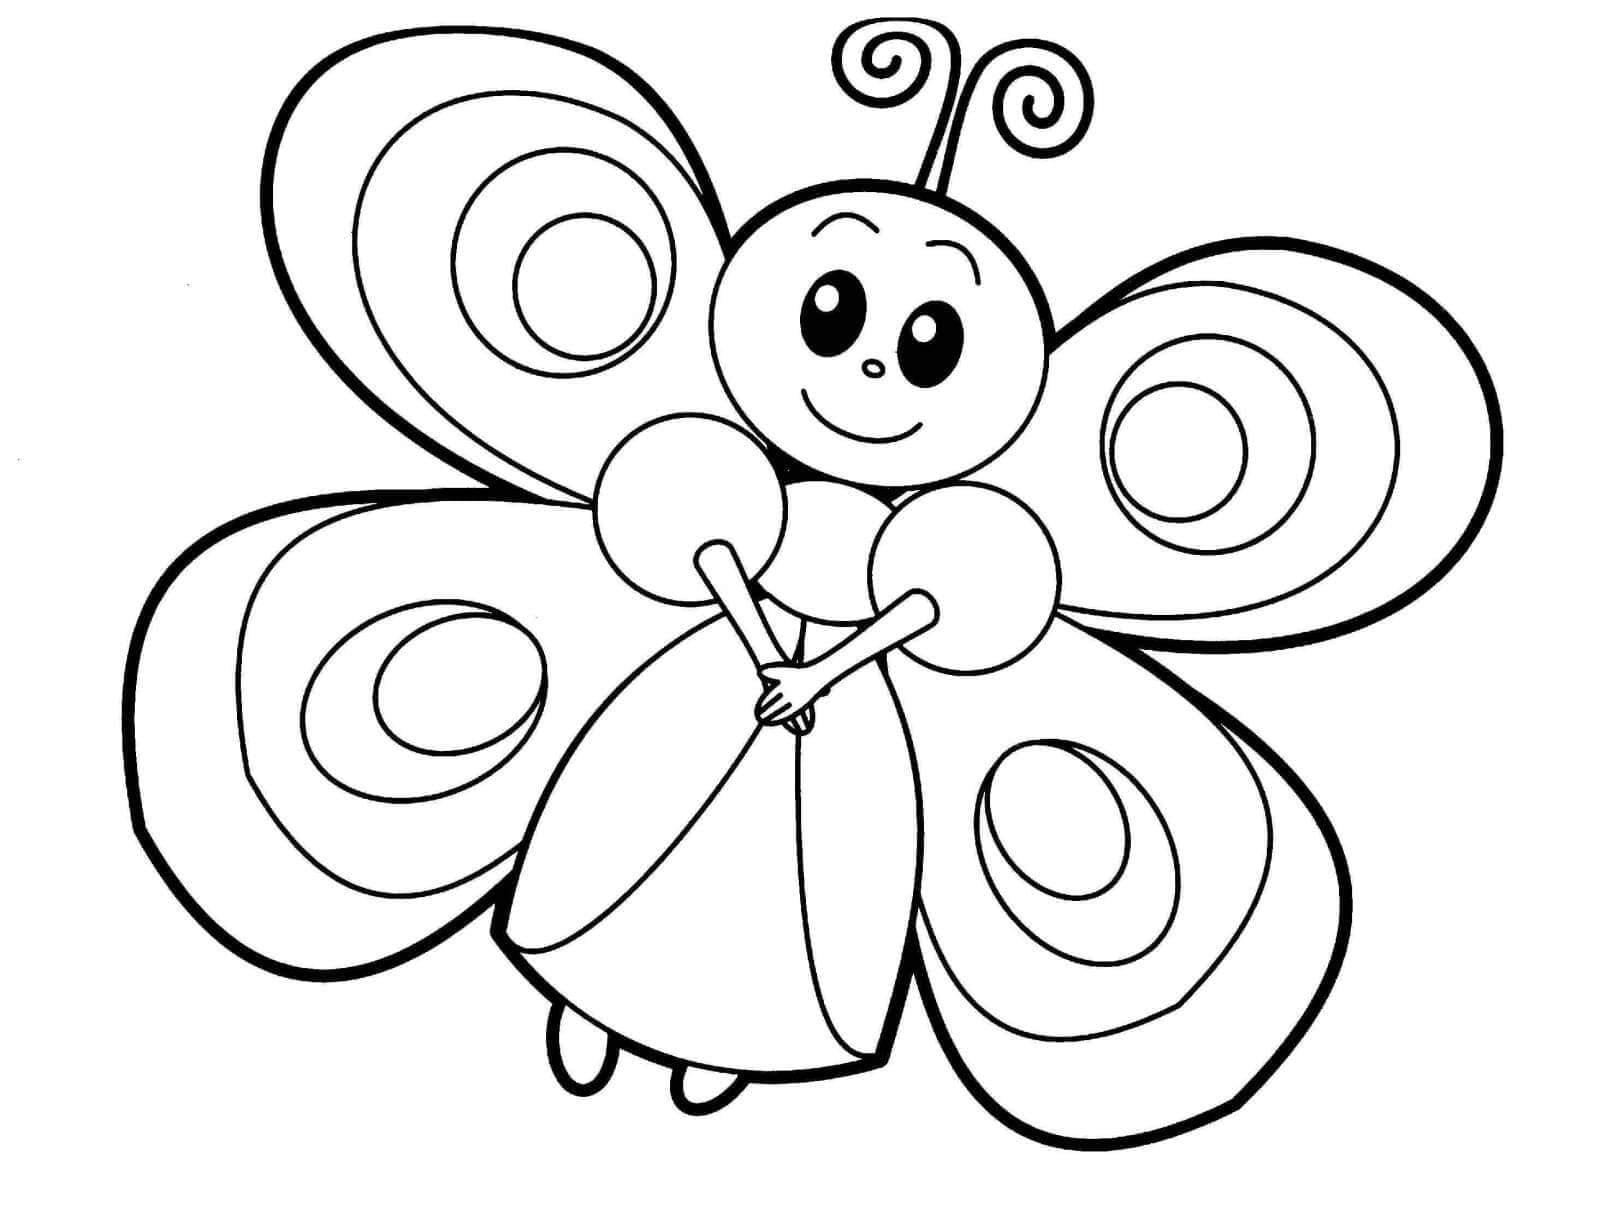 VẼ VÀ TÔ MÀU CON BƯỚM  Draw and color the butterfly  VẼ TRANH TÔ MÀU CHO  BÉ  YouTube